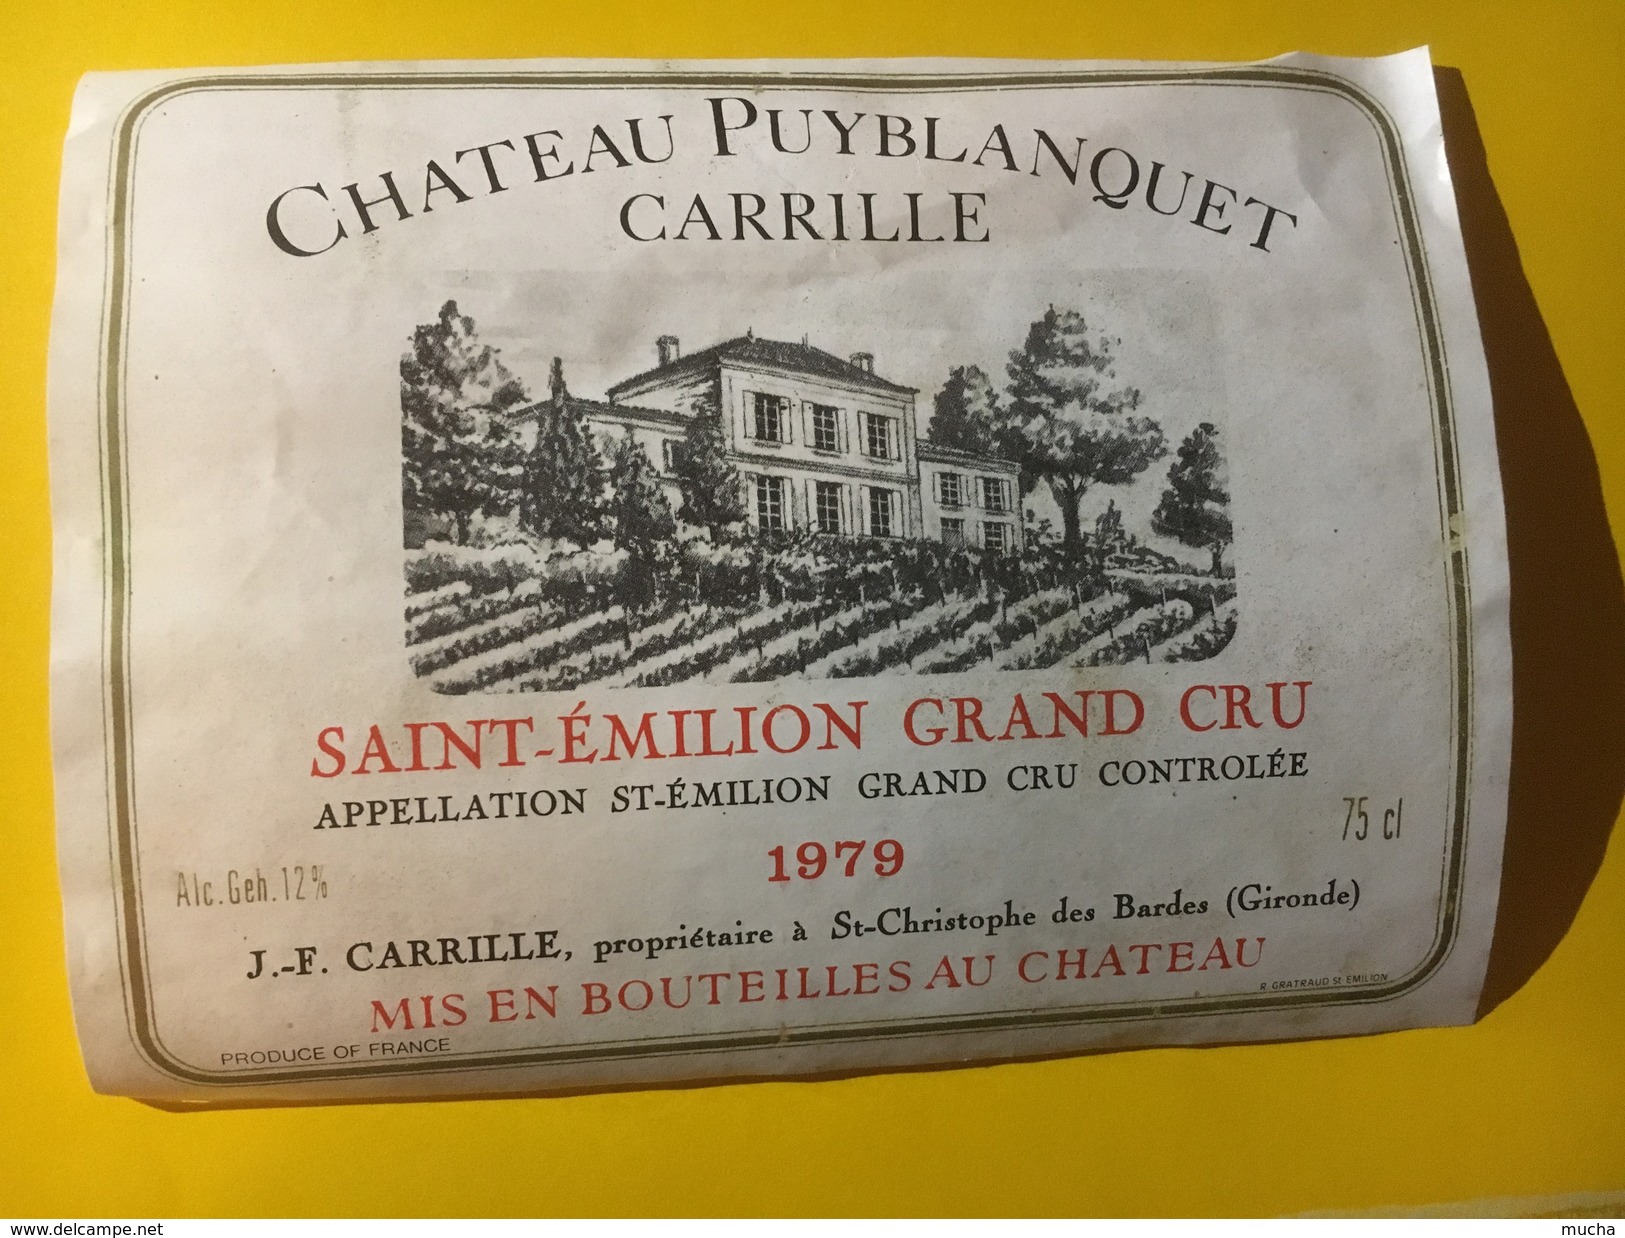 5875 - Château Puyblanquet Carrille 1979 Saint-Emilion - Bordeaux